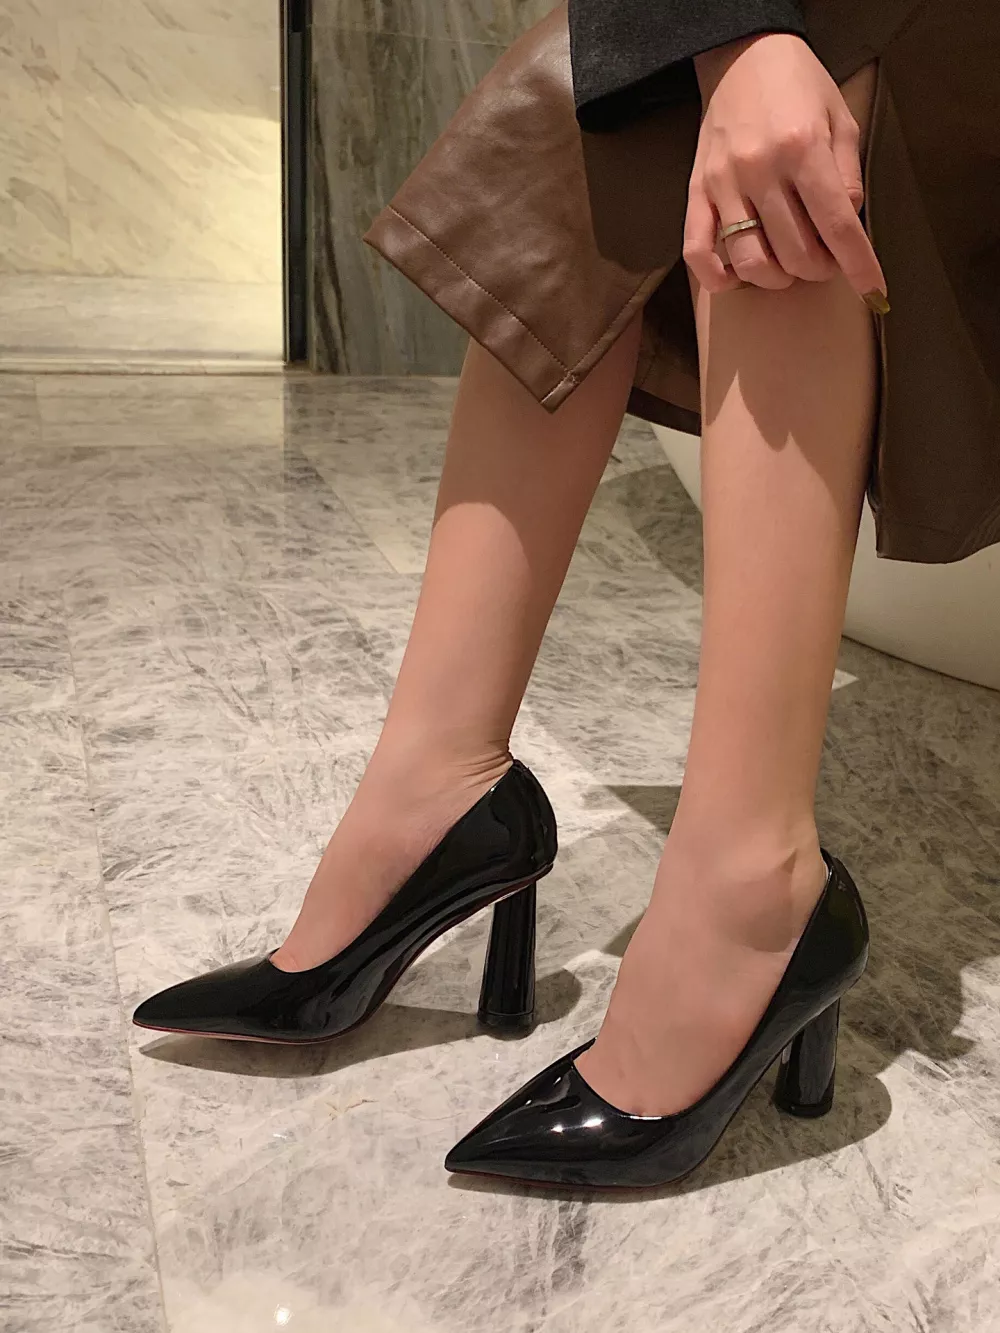 Zapatos de Salón Mujer Elegantes Cómodo Negro Brillante 8 CM Piel Sintético  9222